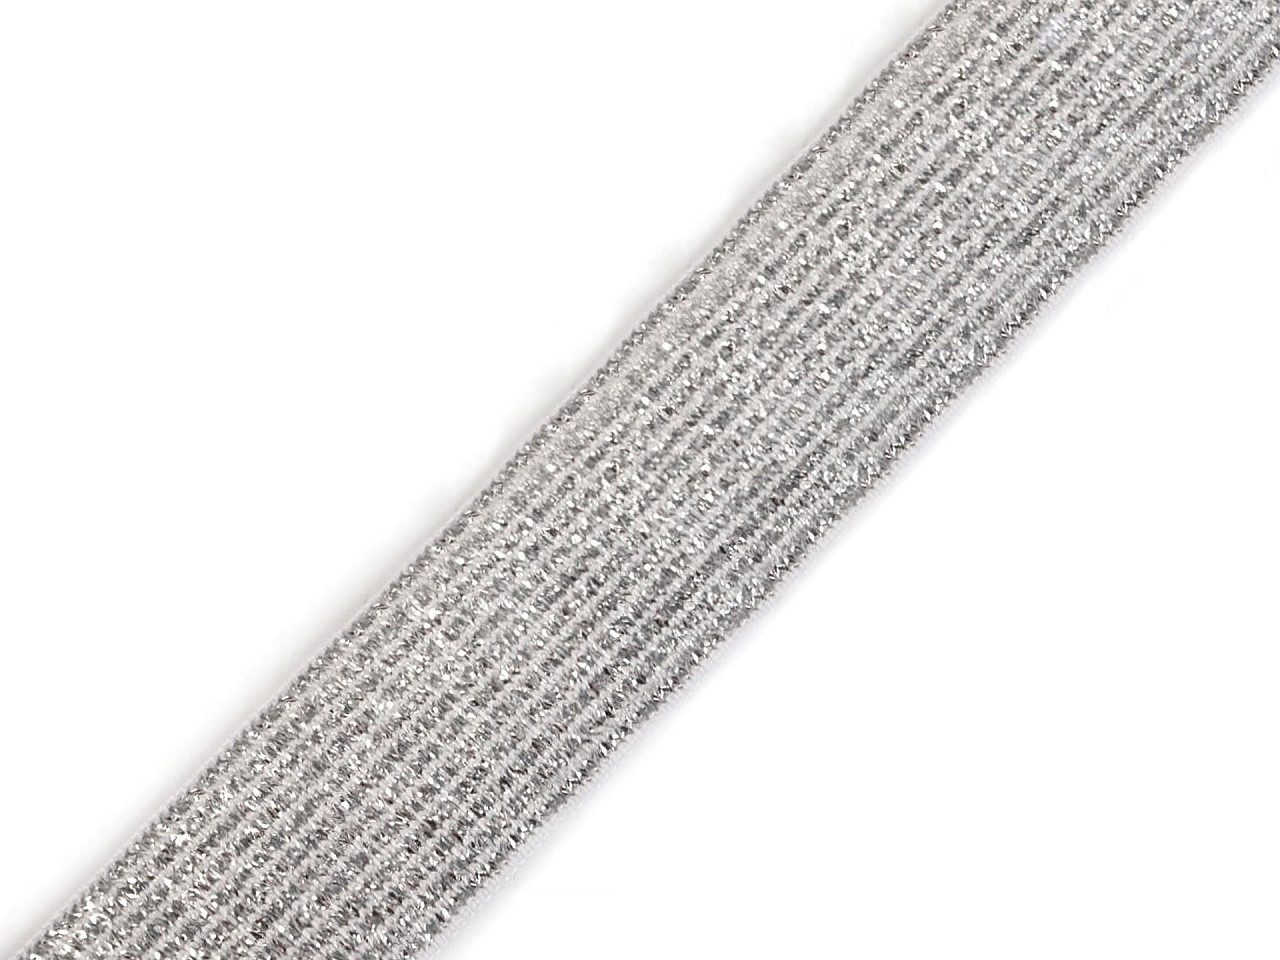 Pruženka šíře 20 mm s lurexem, barva 1 bílá stříbrná